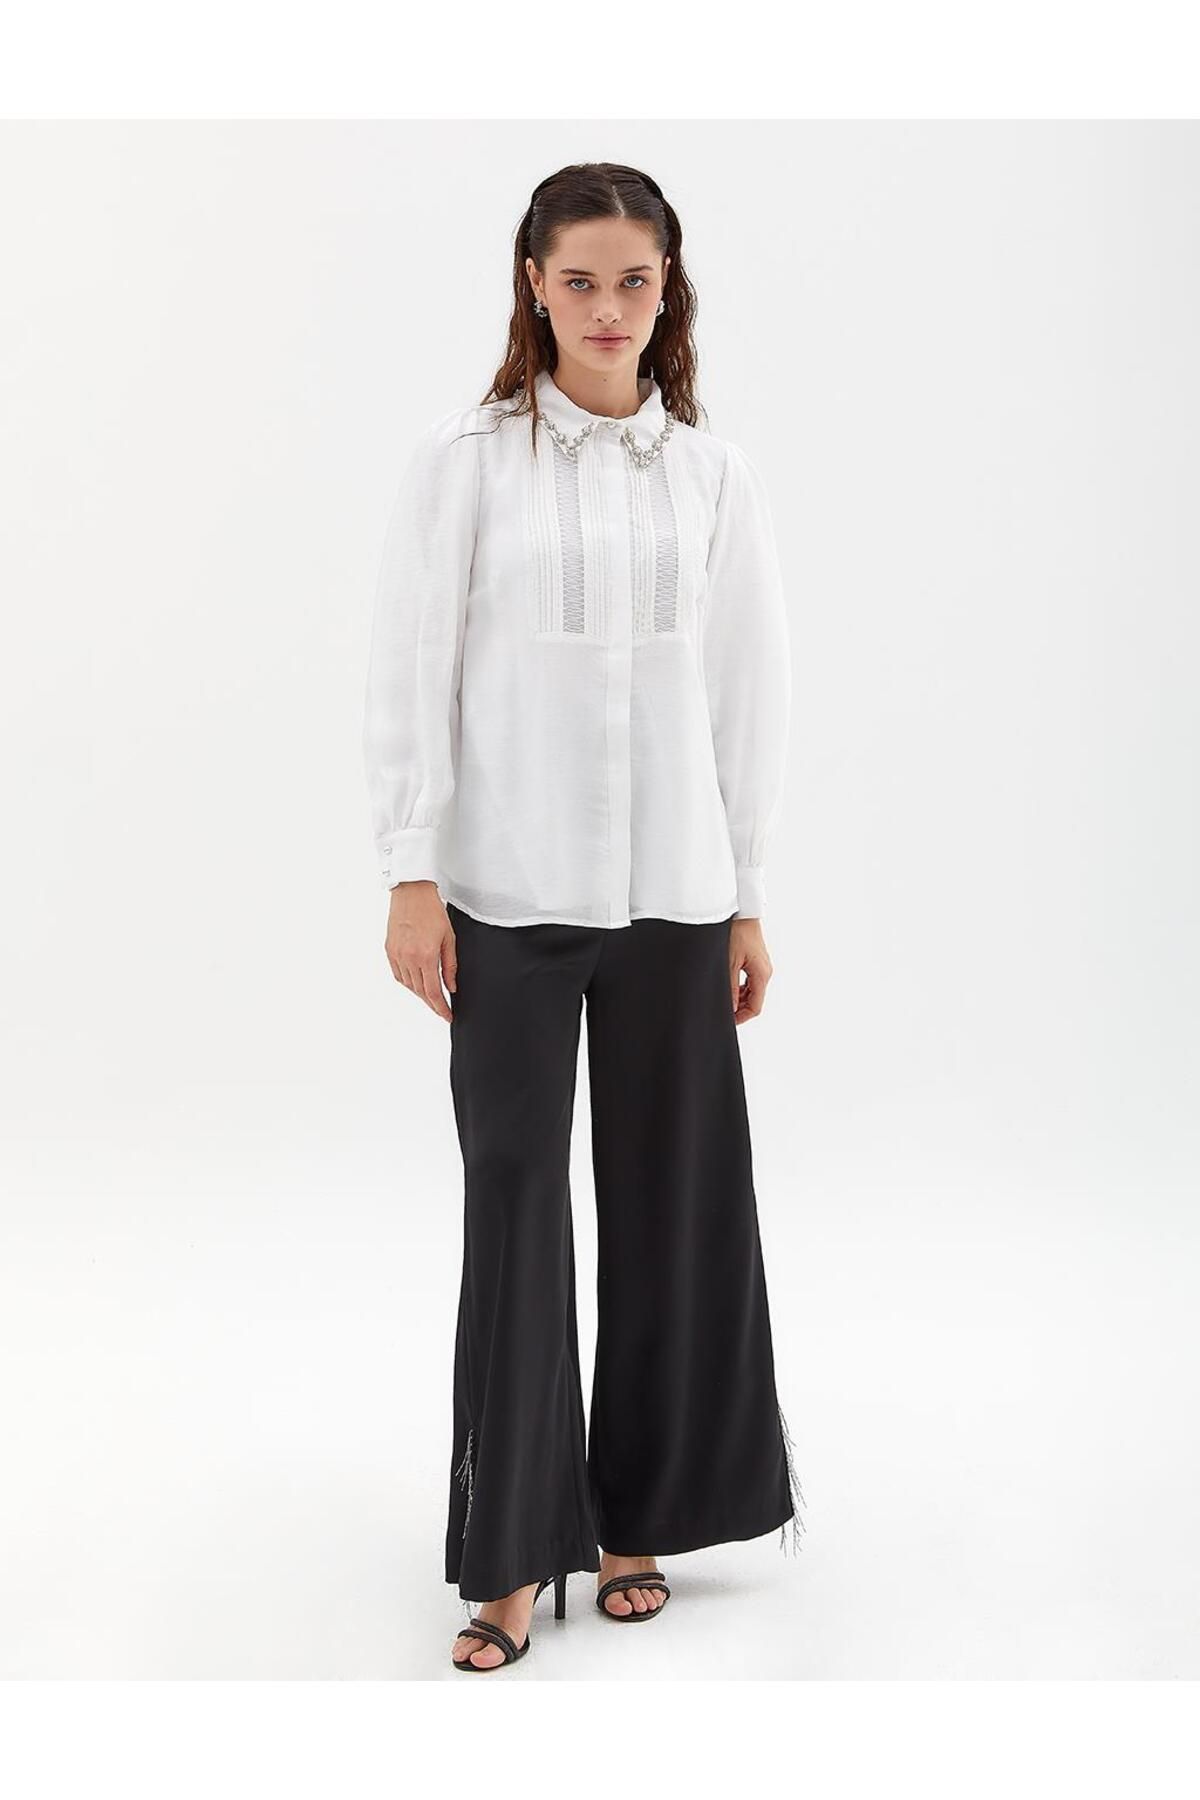 Kayra Boncuk İşkemeli Dikiş Detaylı Bluz Optik Beyaz